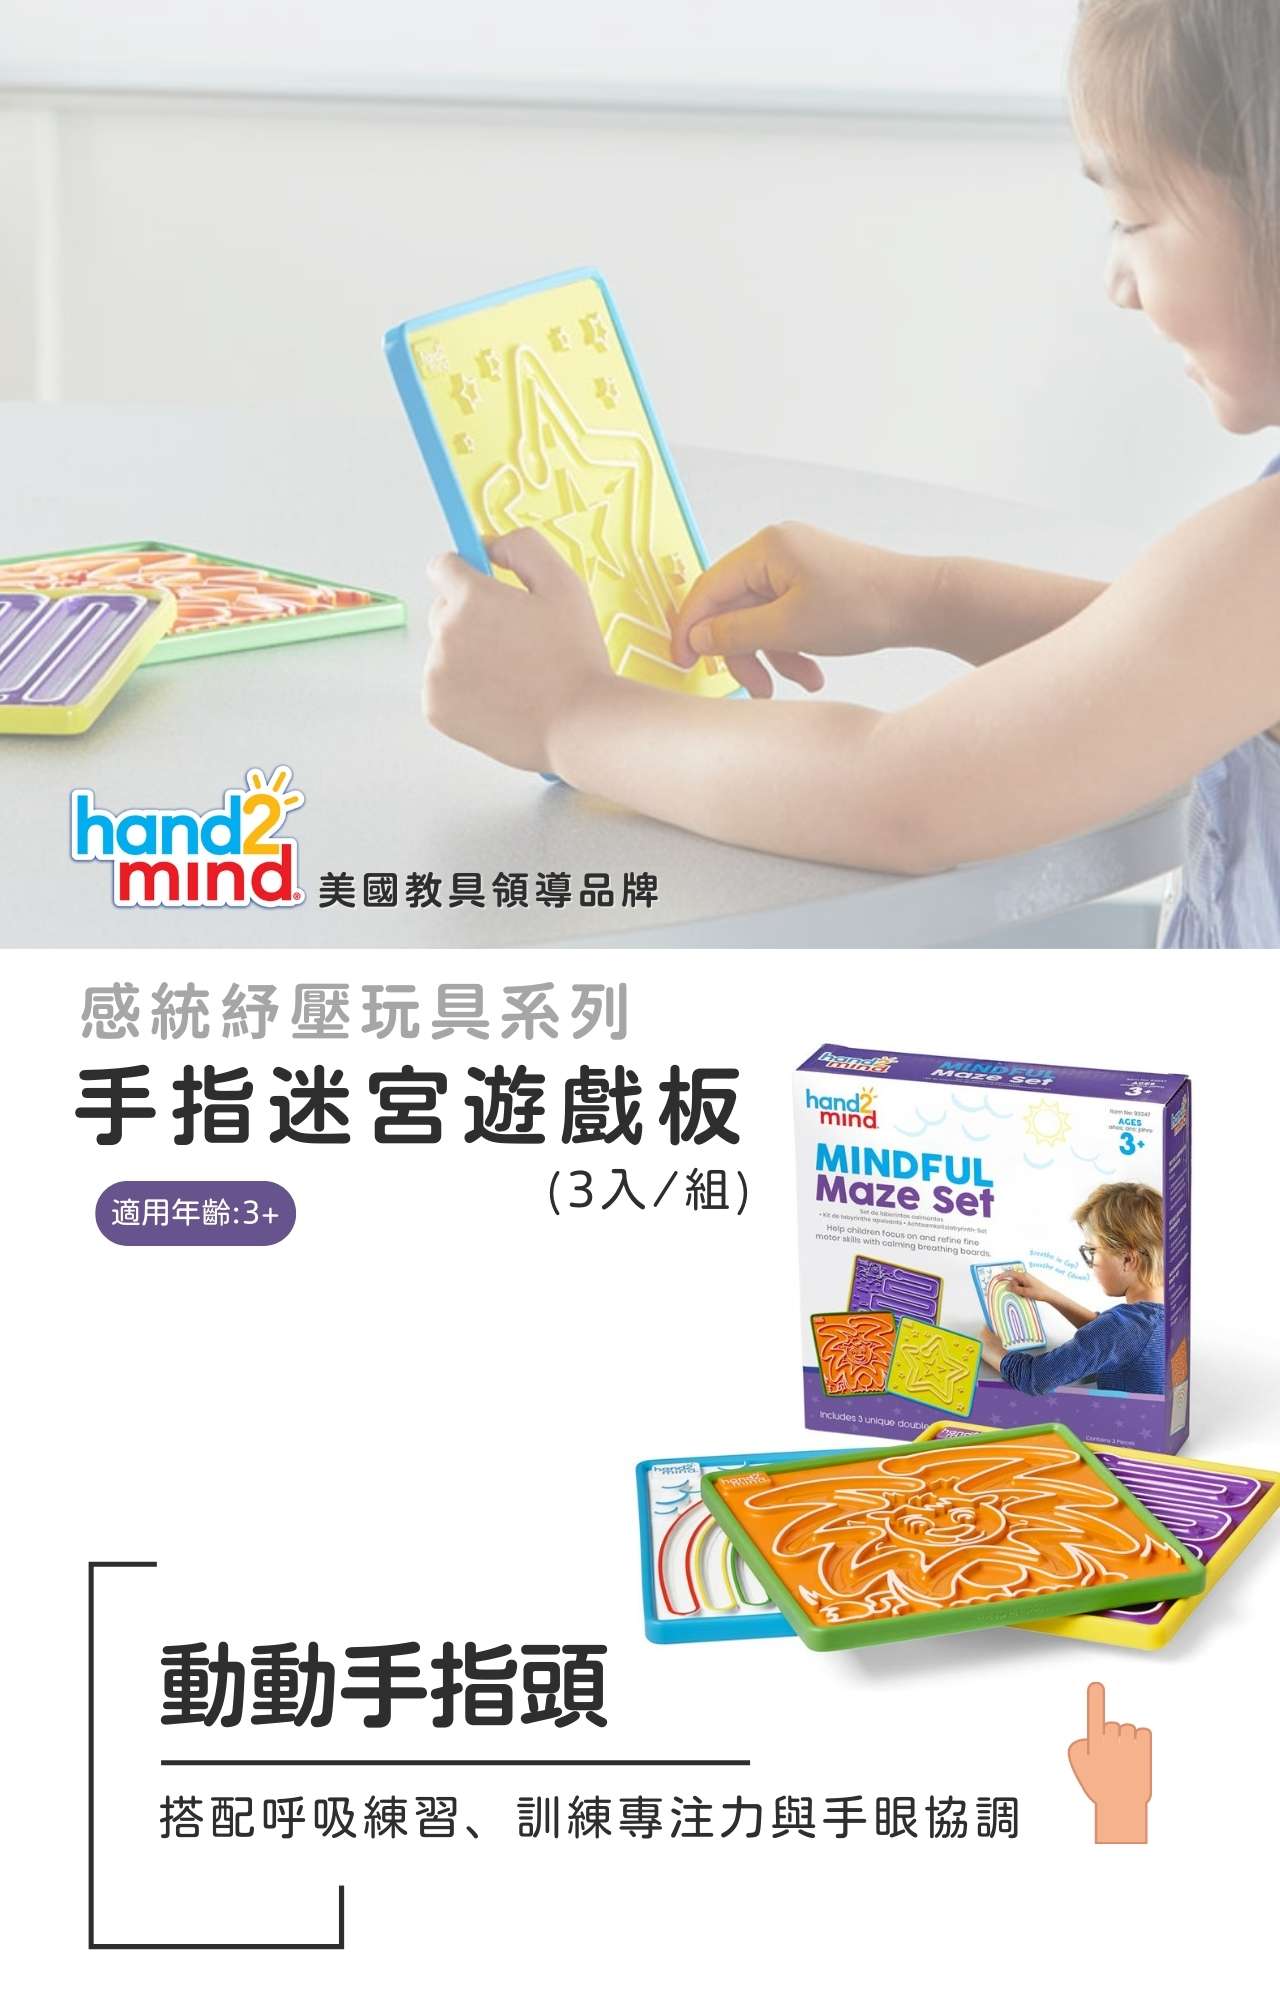 美國hand2mind 手指迷宮遊戲板_產品說明 (1)